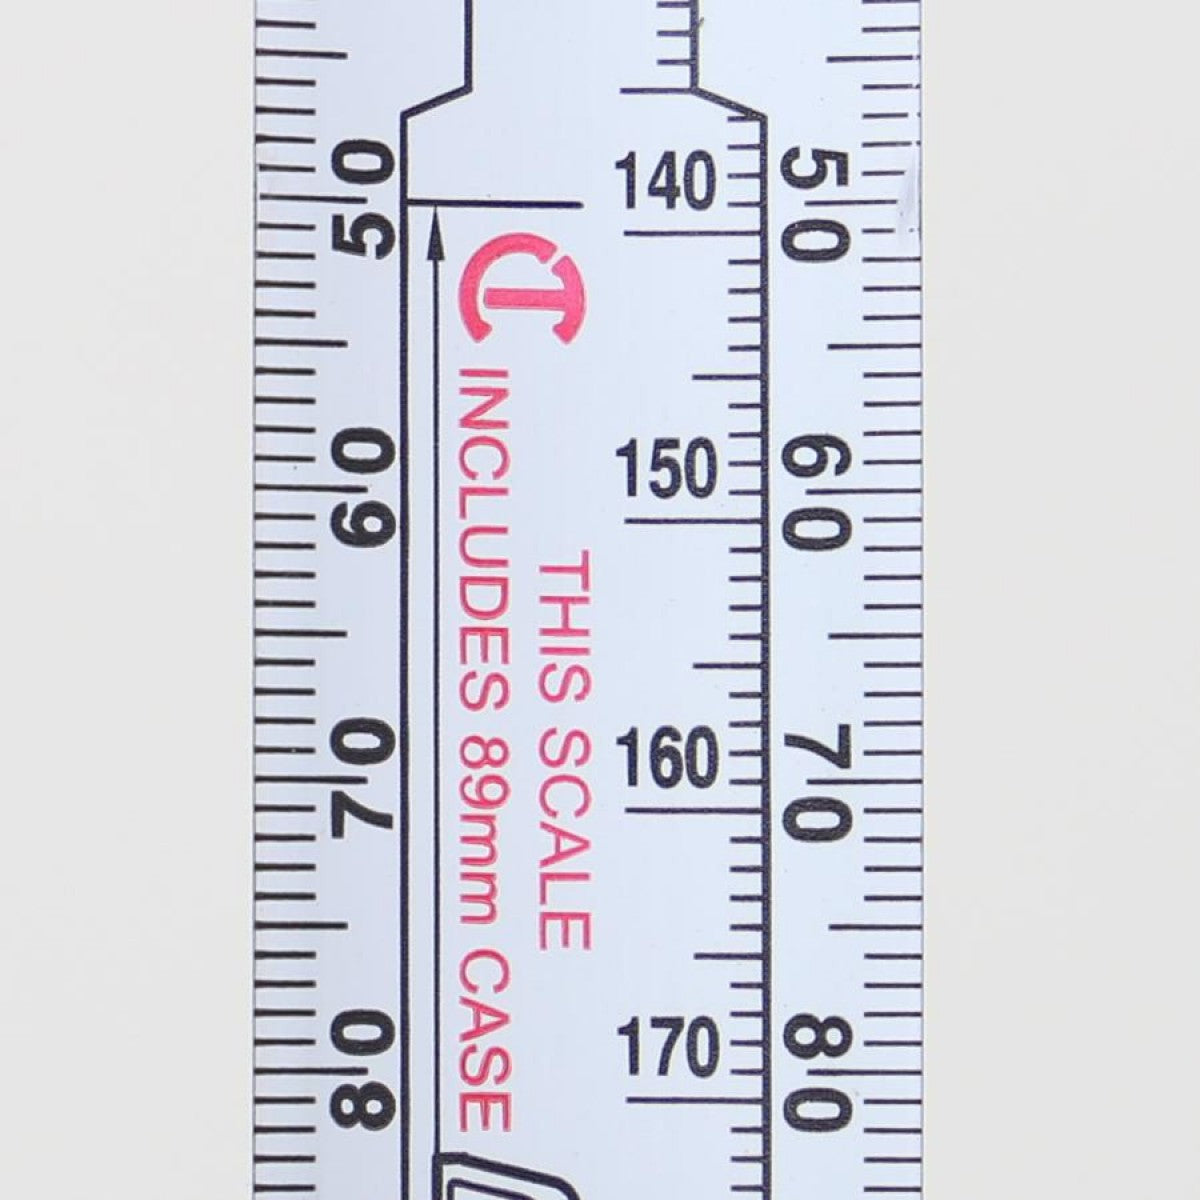 8m x 25mm Multi Read Tape Measure MR48MN by Lufkin